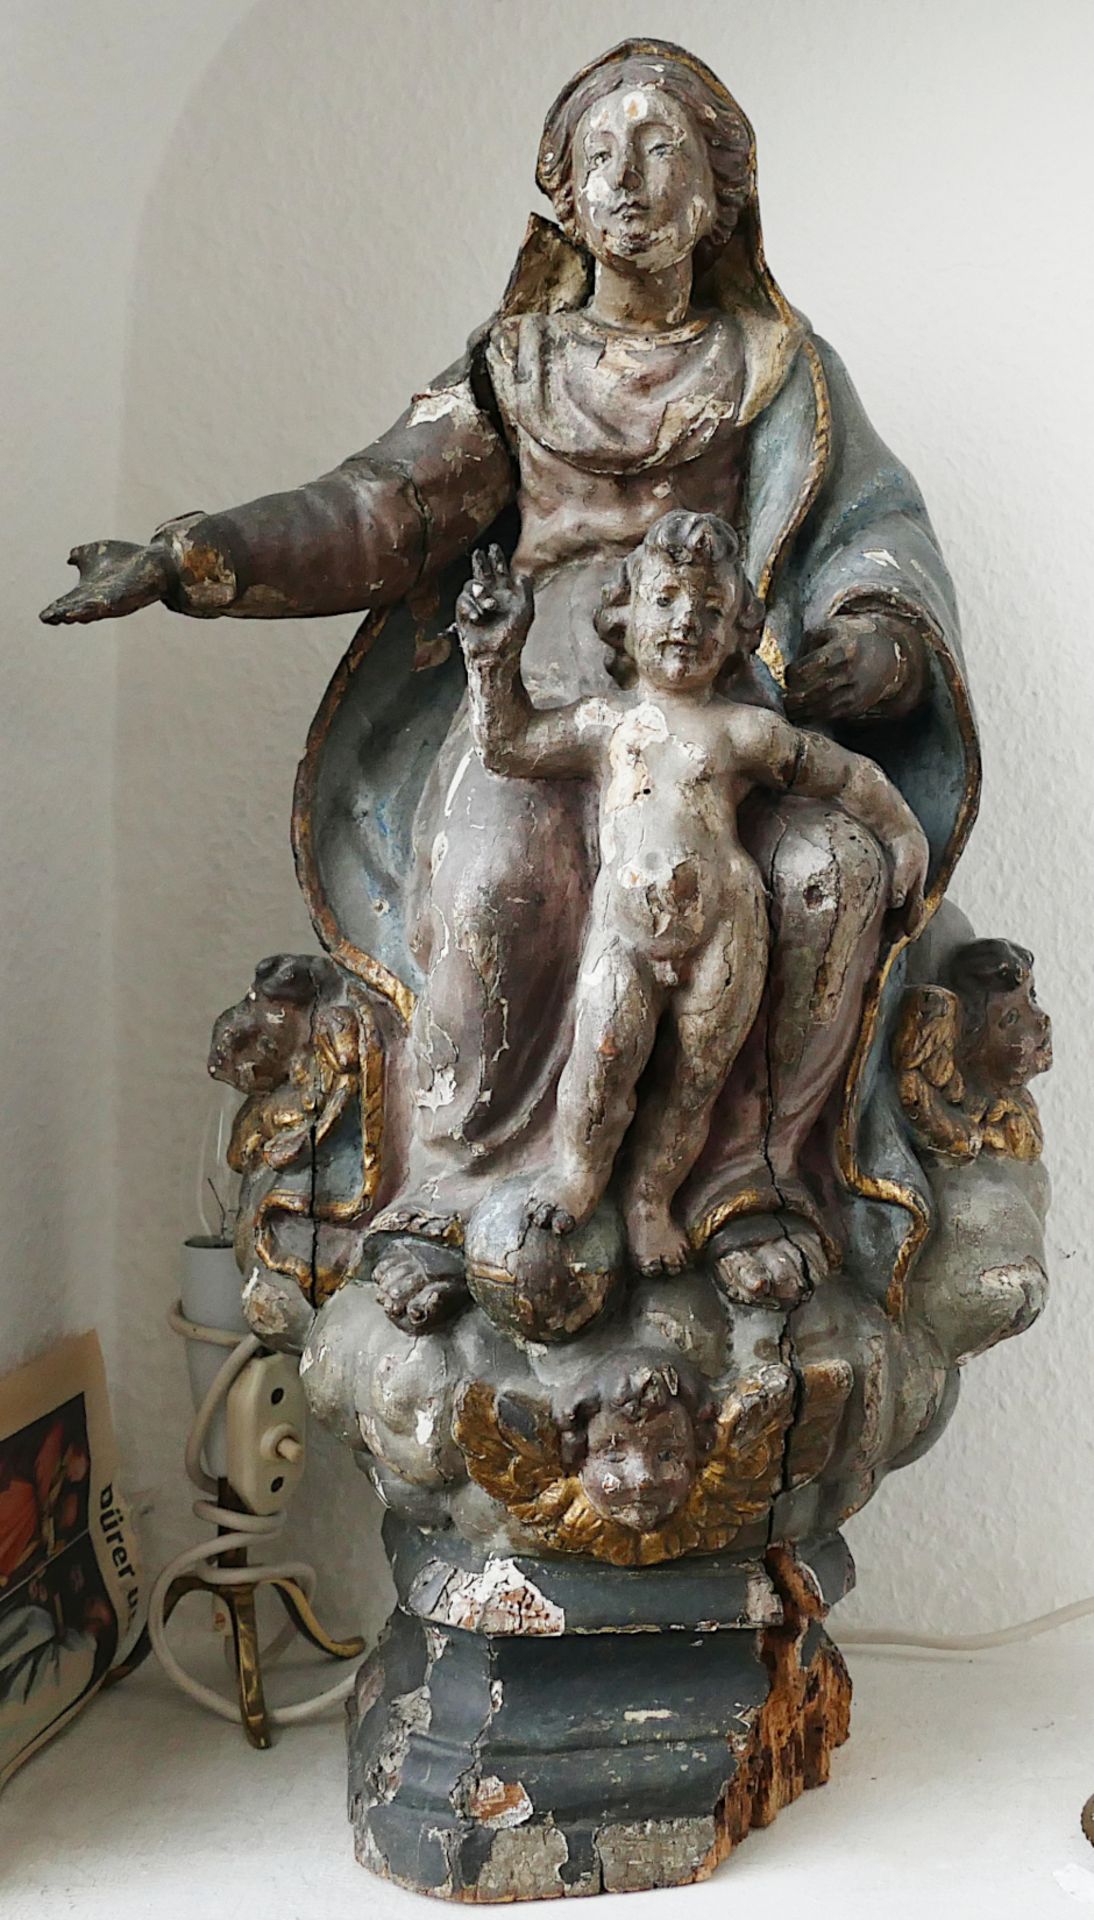 1 Holzfigur Madonna mit Kind, wohl 18. Jh., alpenländisch, orig. bem., besch., Teile fehlen, H 50 cm